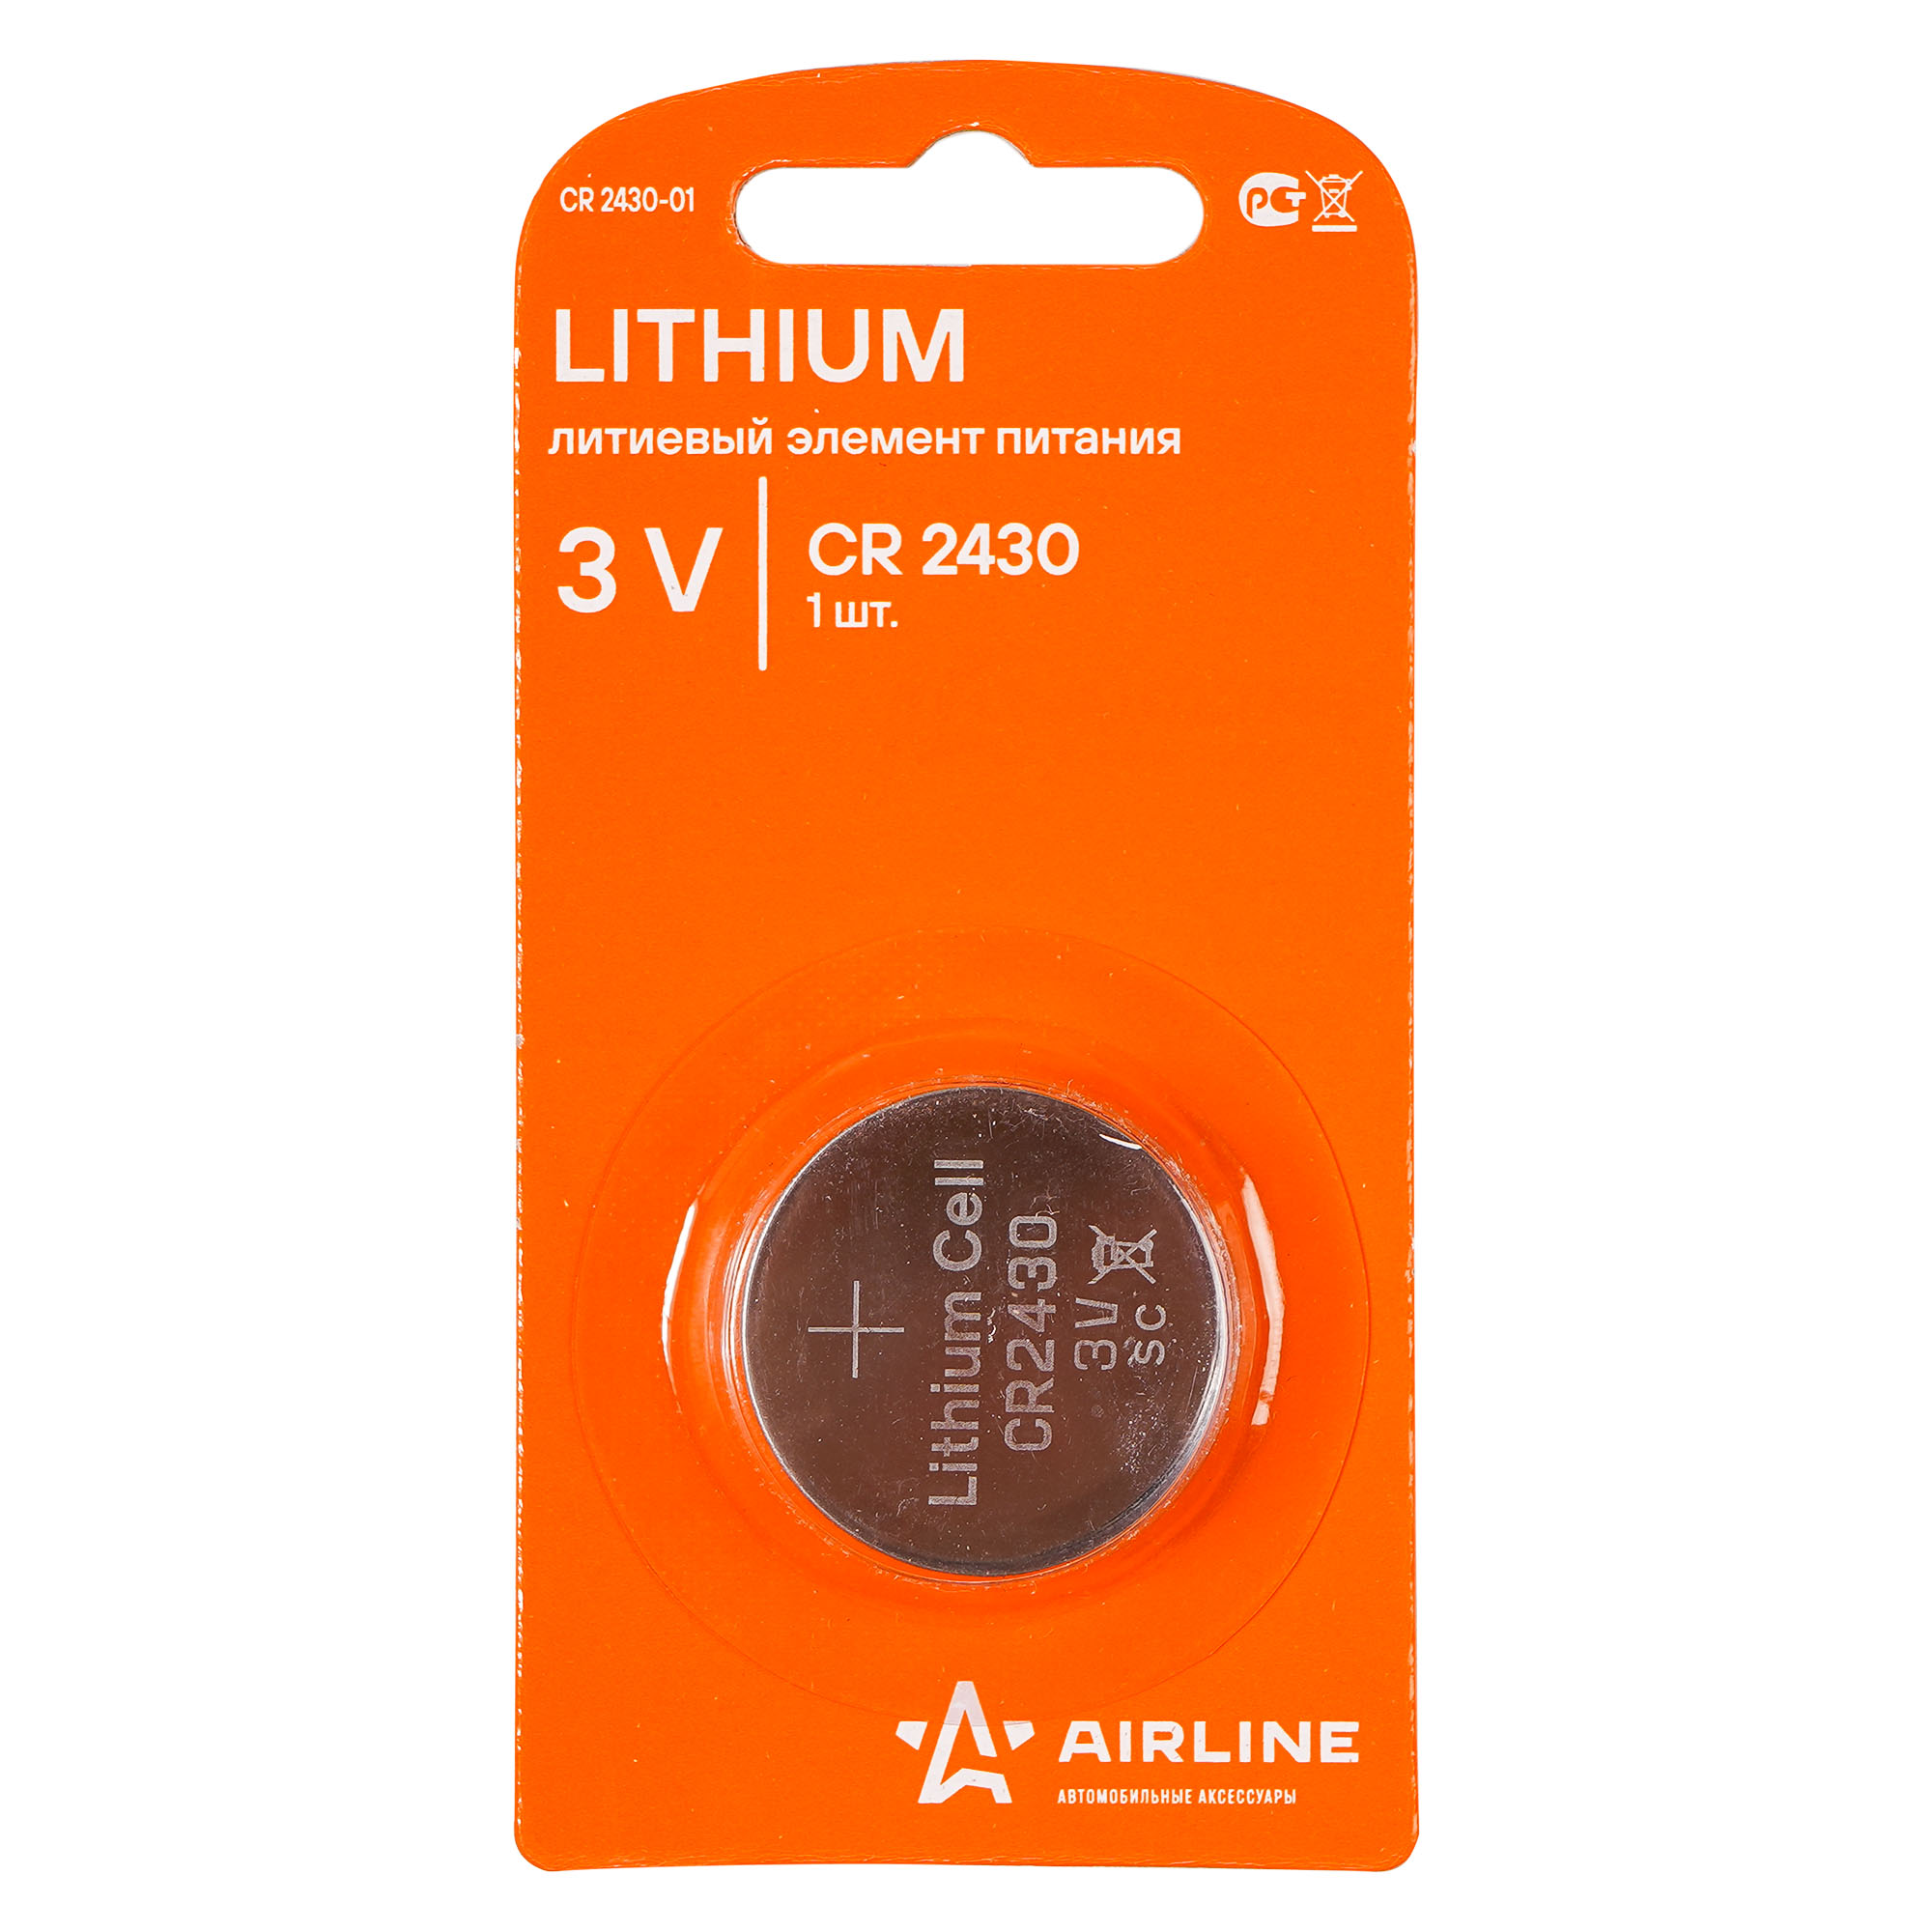 Батарейка литиевая AIRLINE Lithium CR2430 3V упаковка 1 шт. CR2430-01